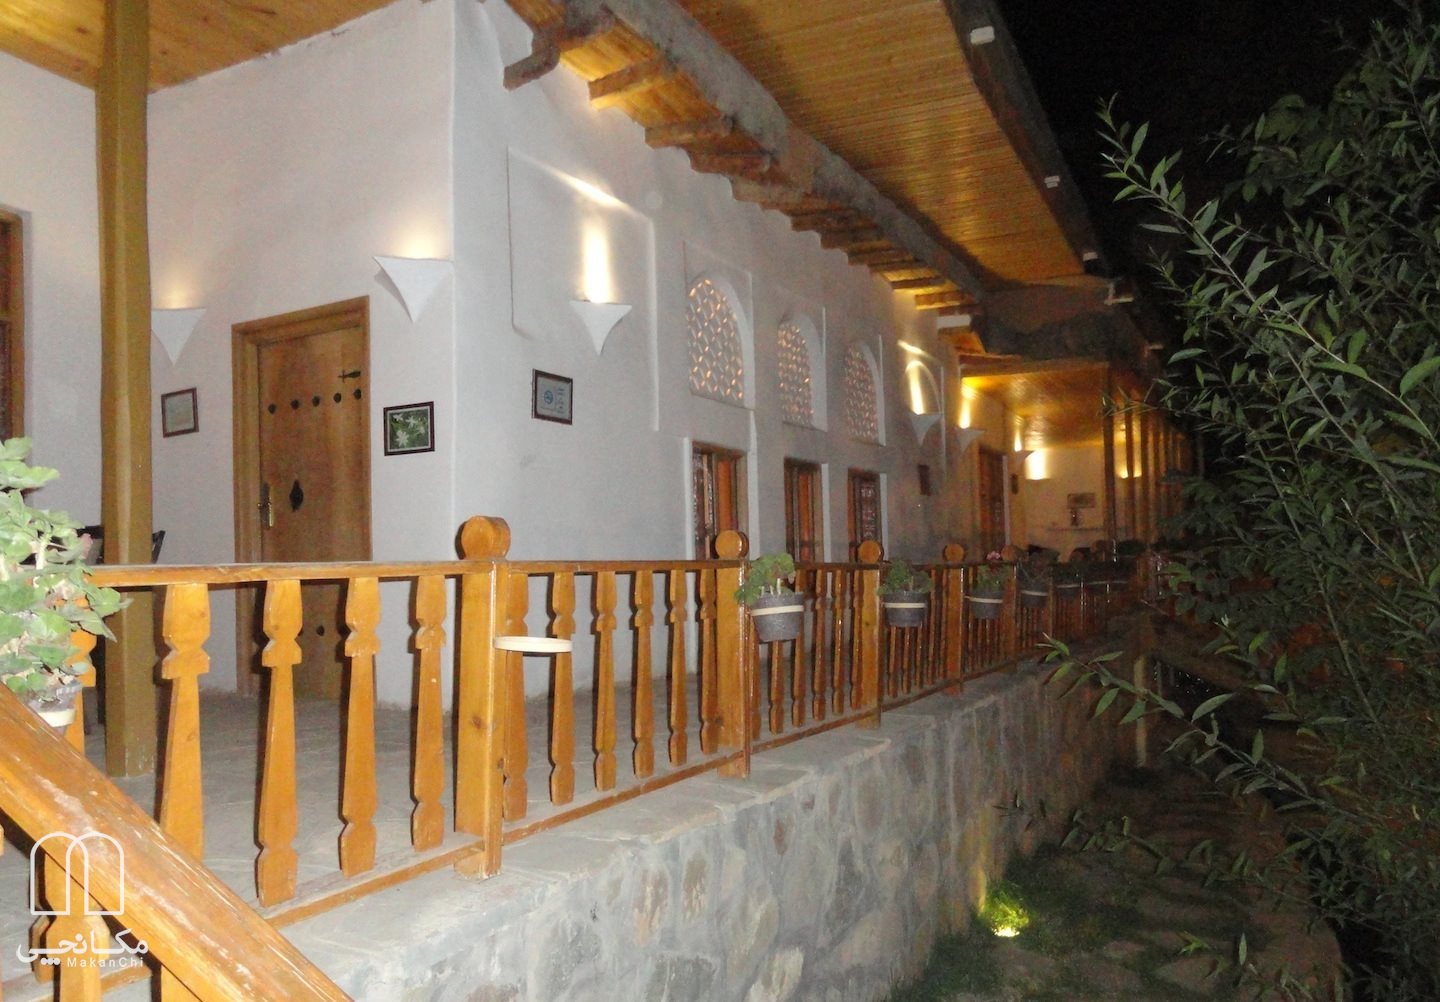 هتل سنتی خانه گل شهمیرزاد سمنان